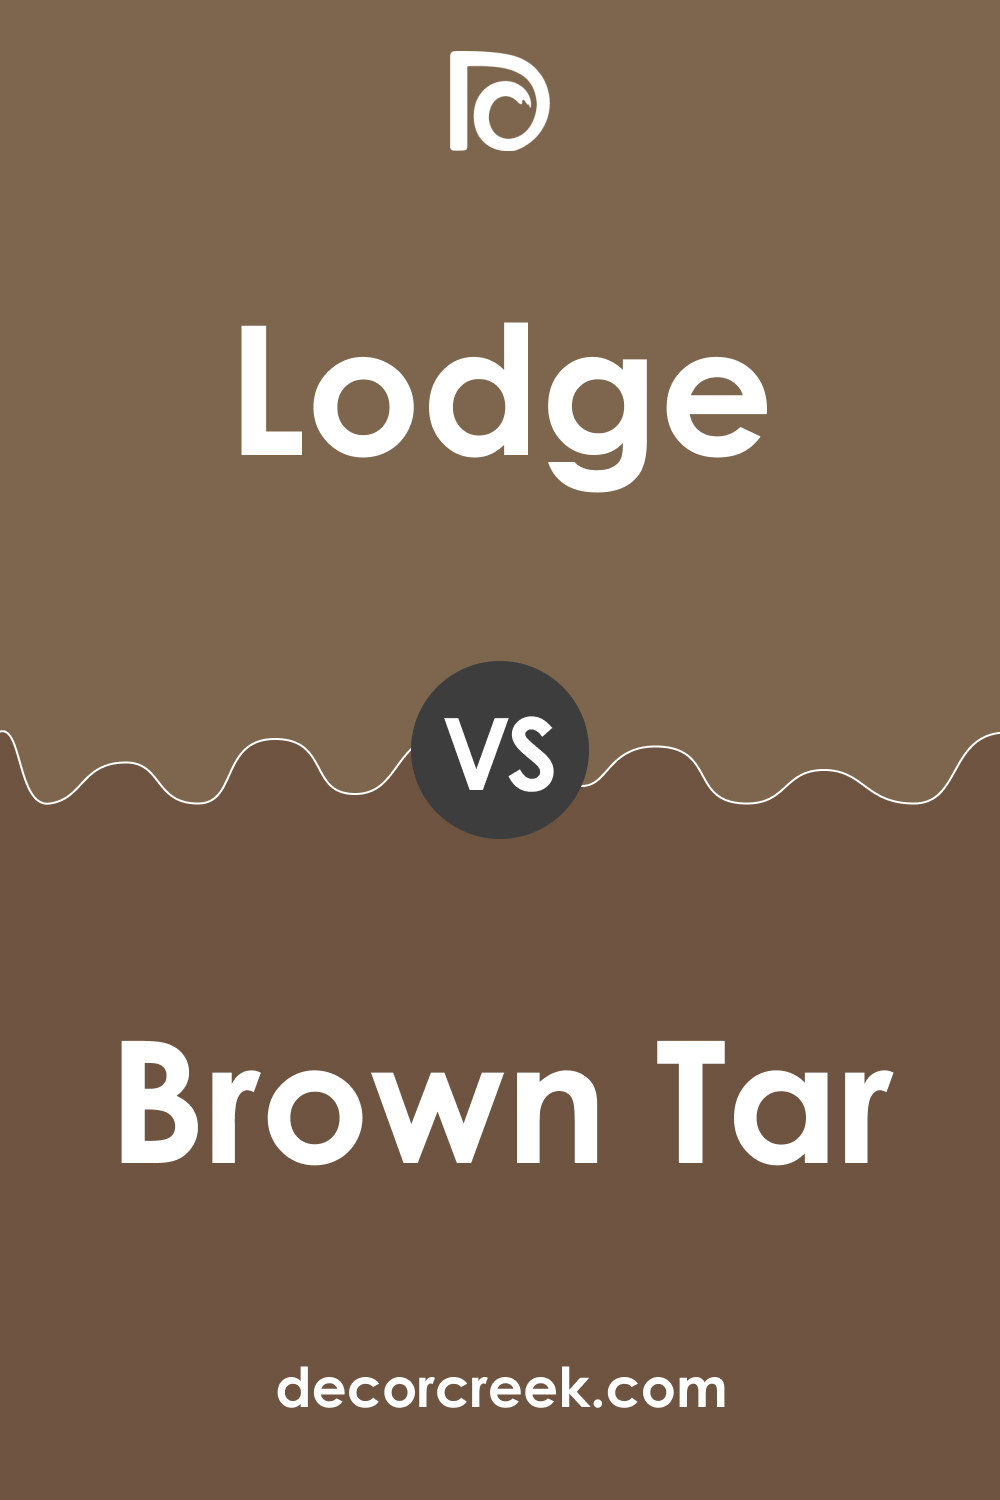 Lodge AF-115 vs. BM 2110-20 Brown Tar